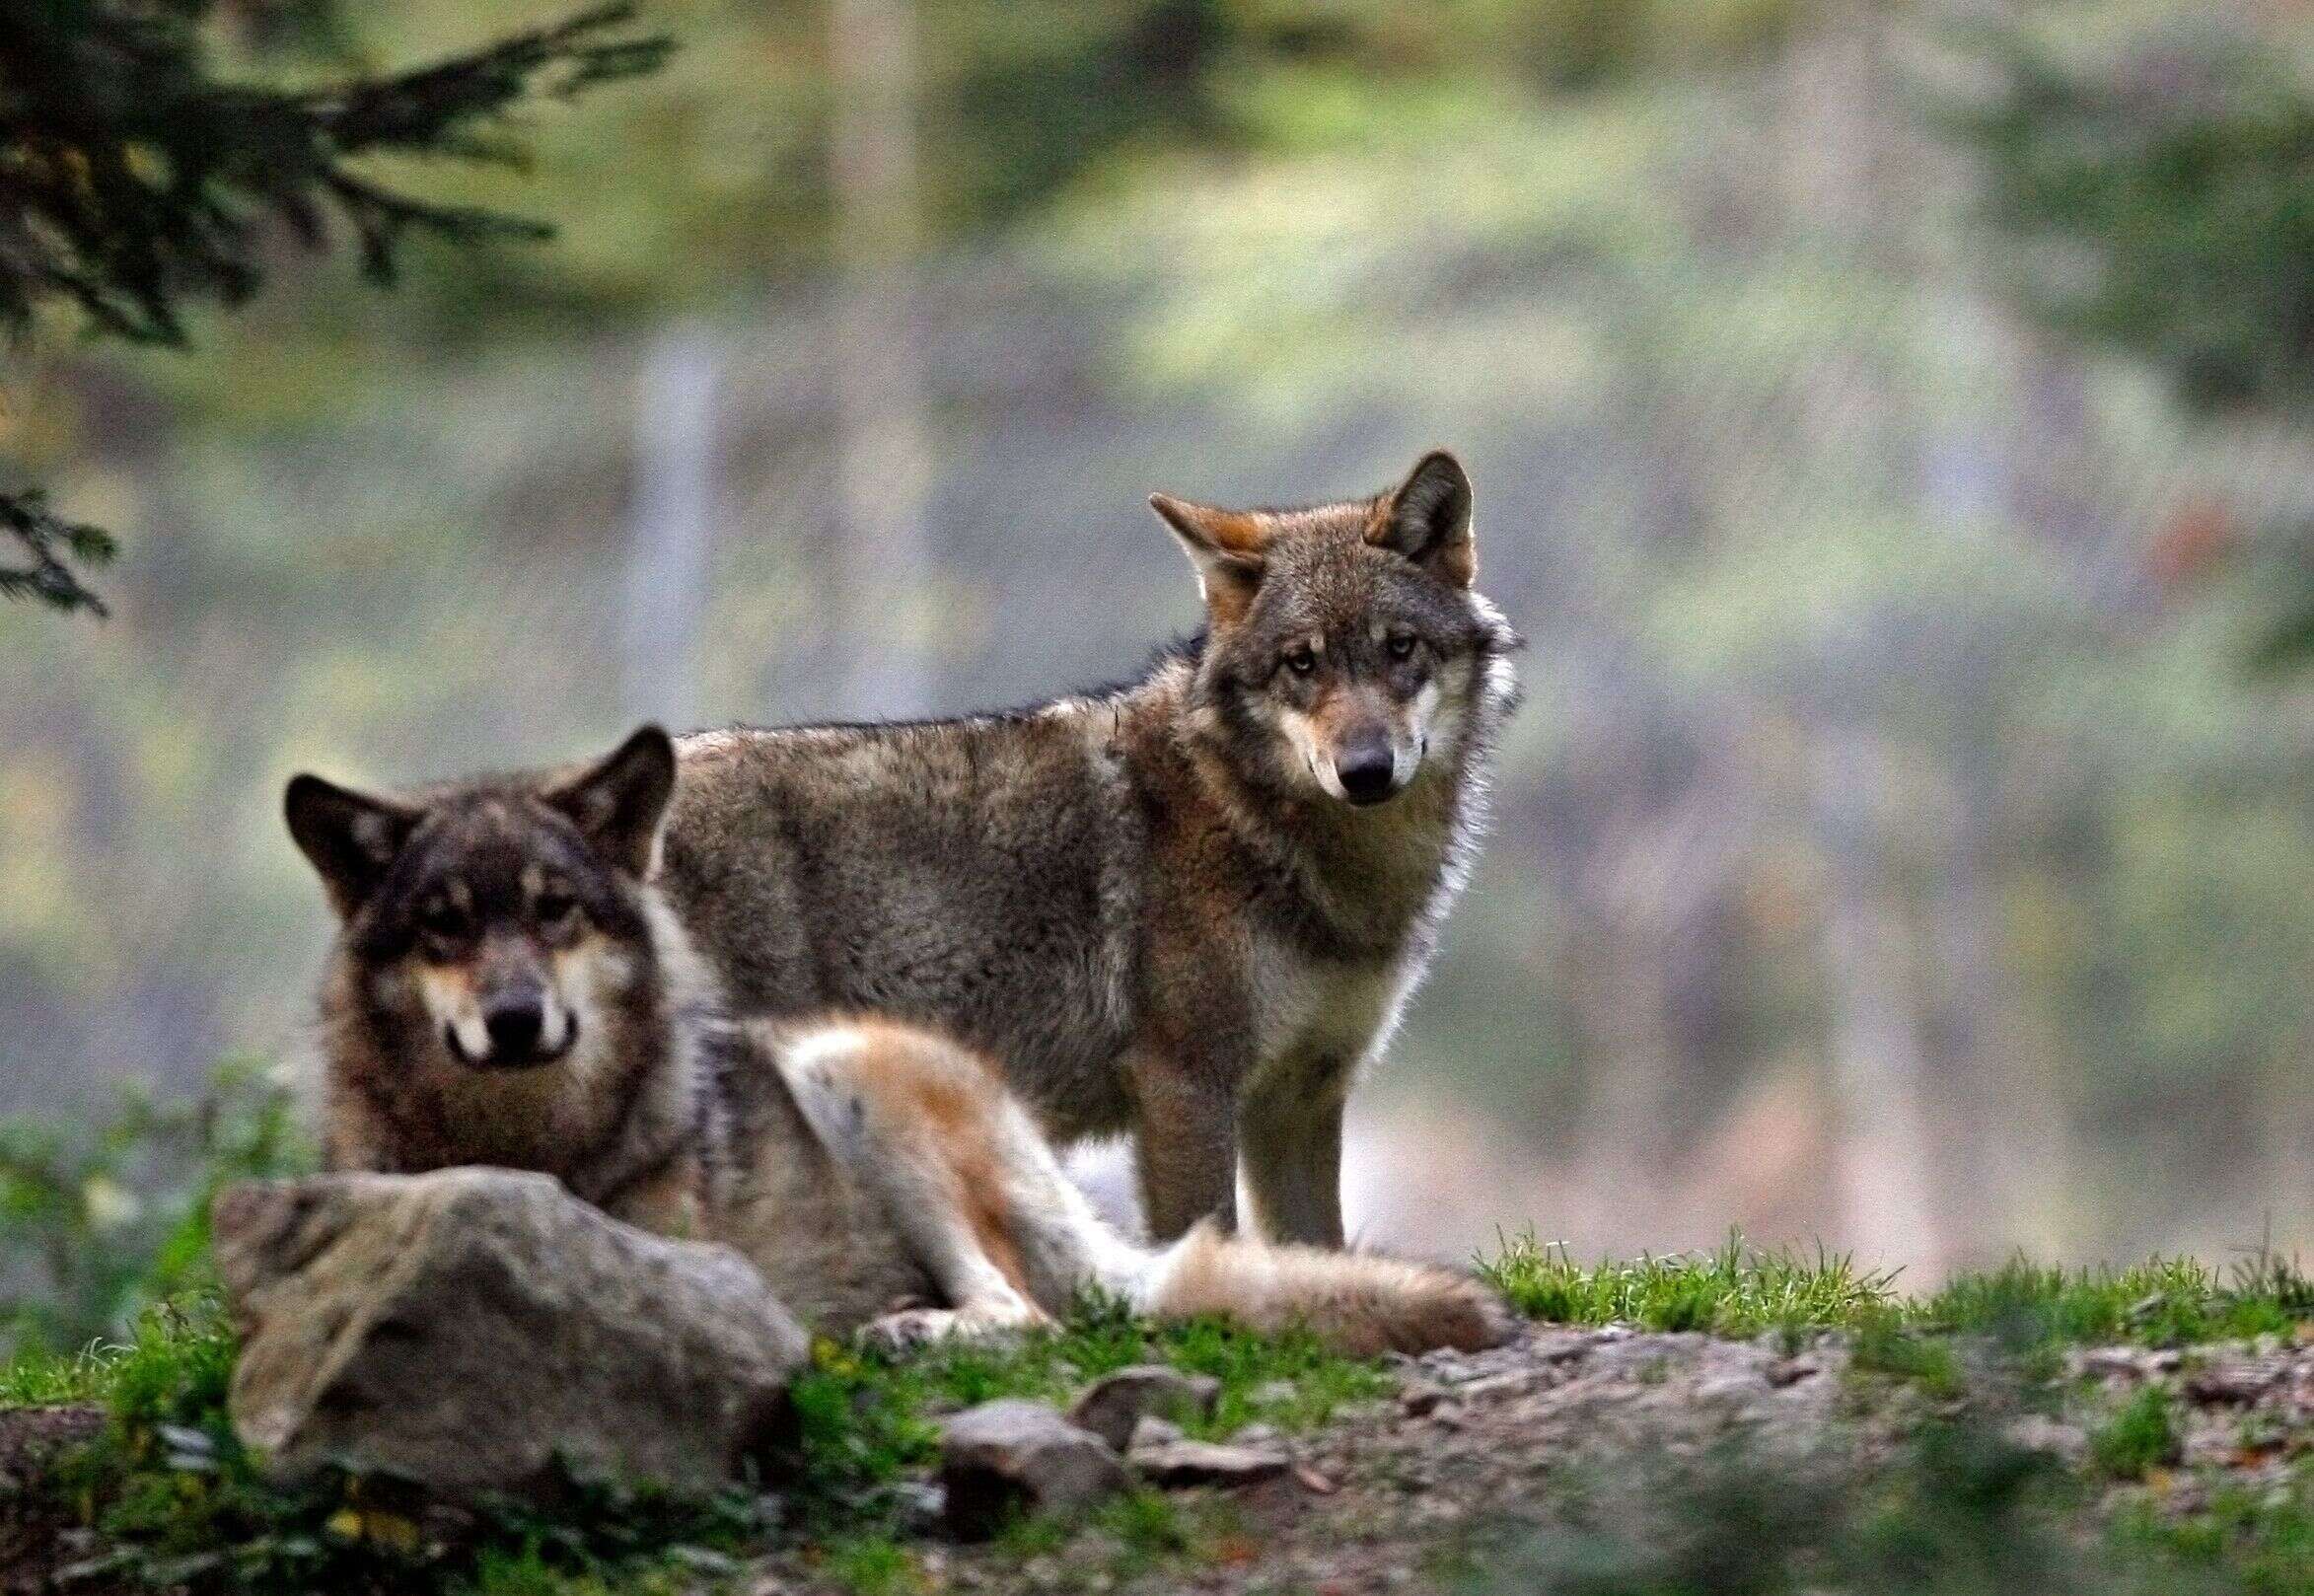 Un parc à loups détruit dans les Alpes-Maritimes, le sort des animaux incertain (Photo de deux loups du parc de Saint-Martin-Vésubie prise en 2006 par REUTERS/Eric Gaillard)